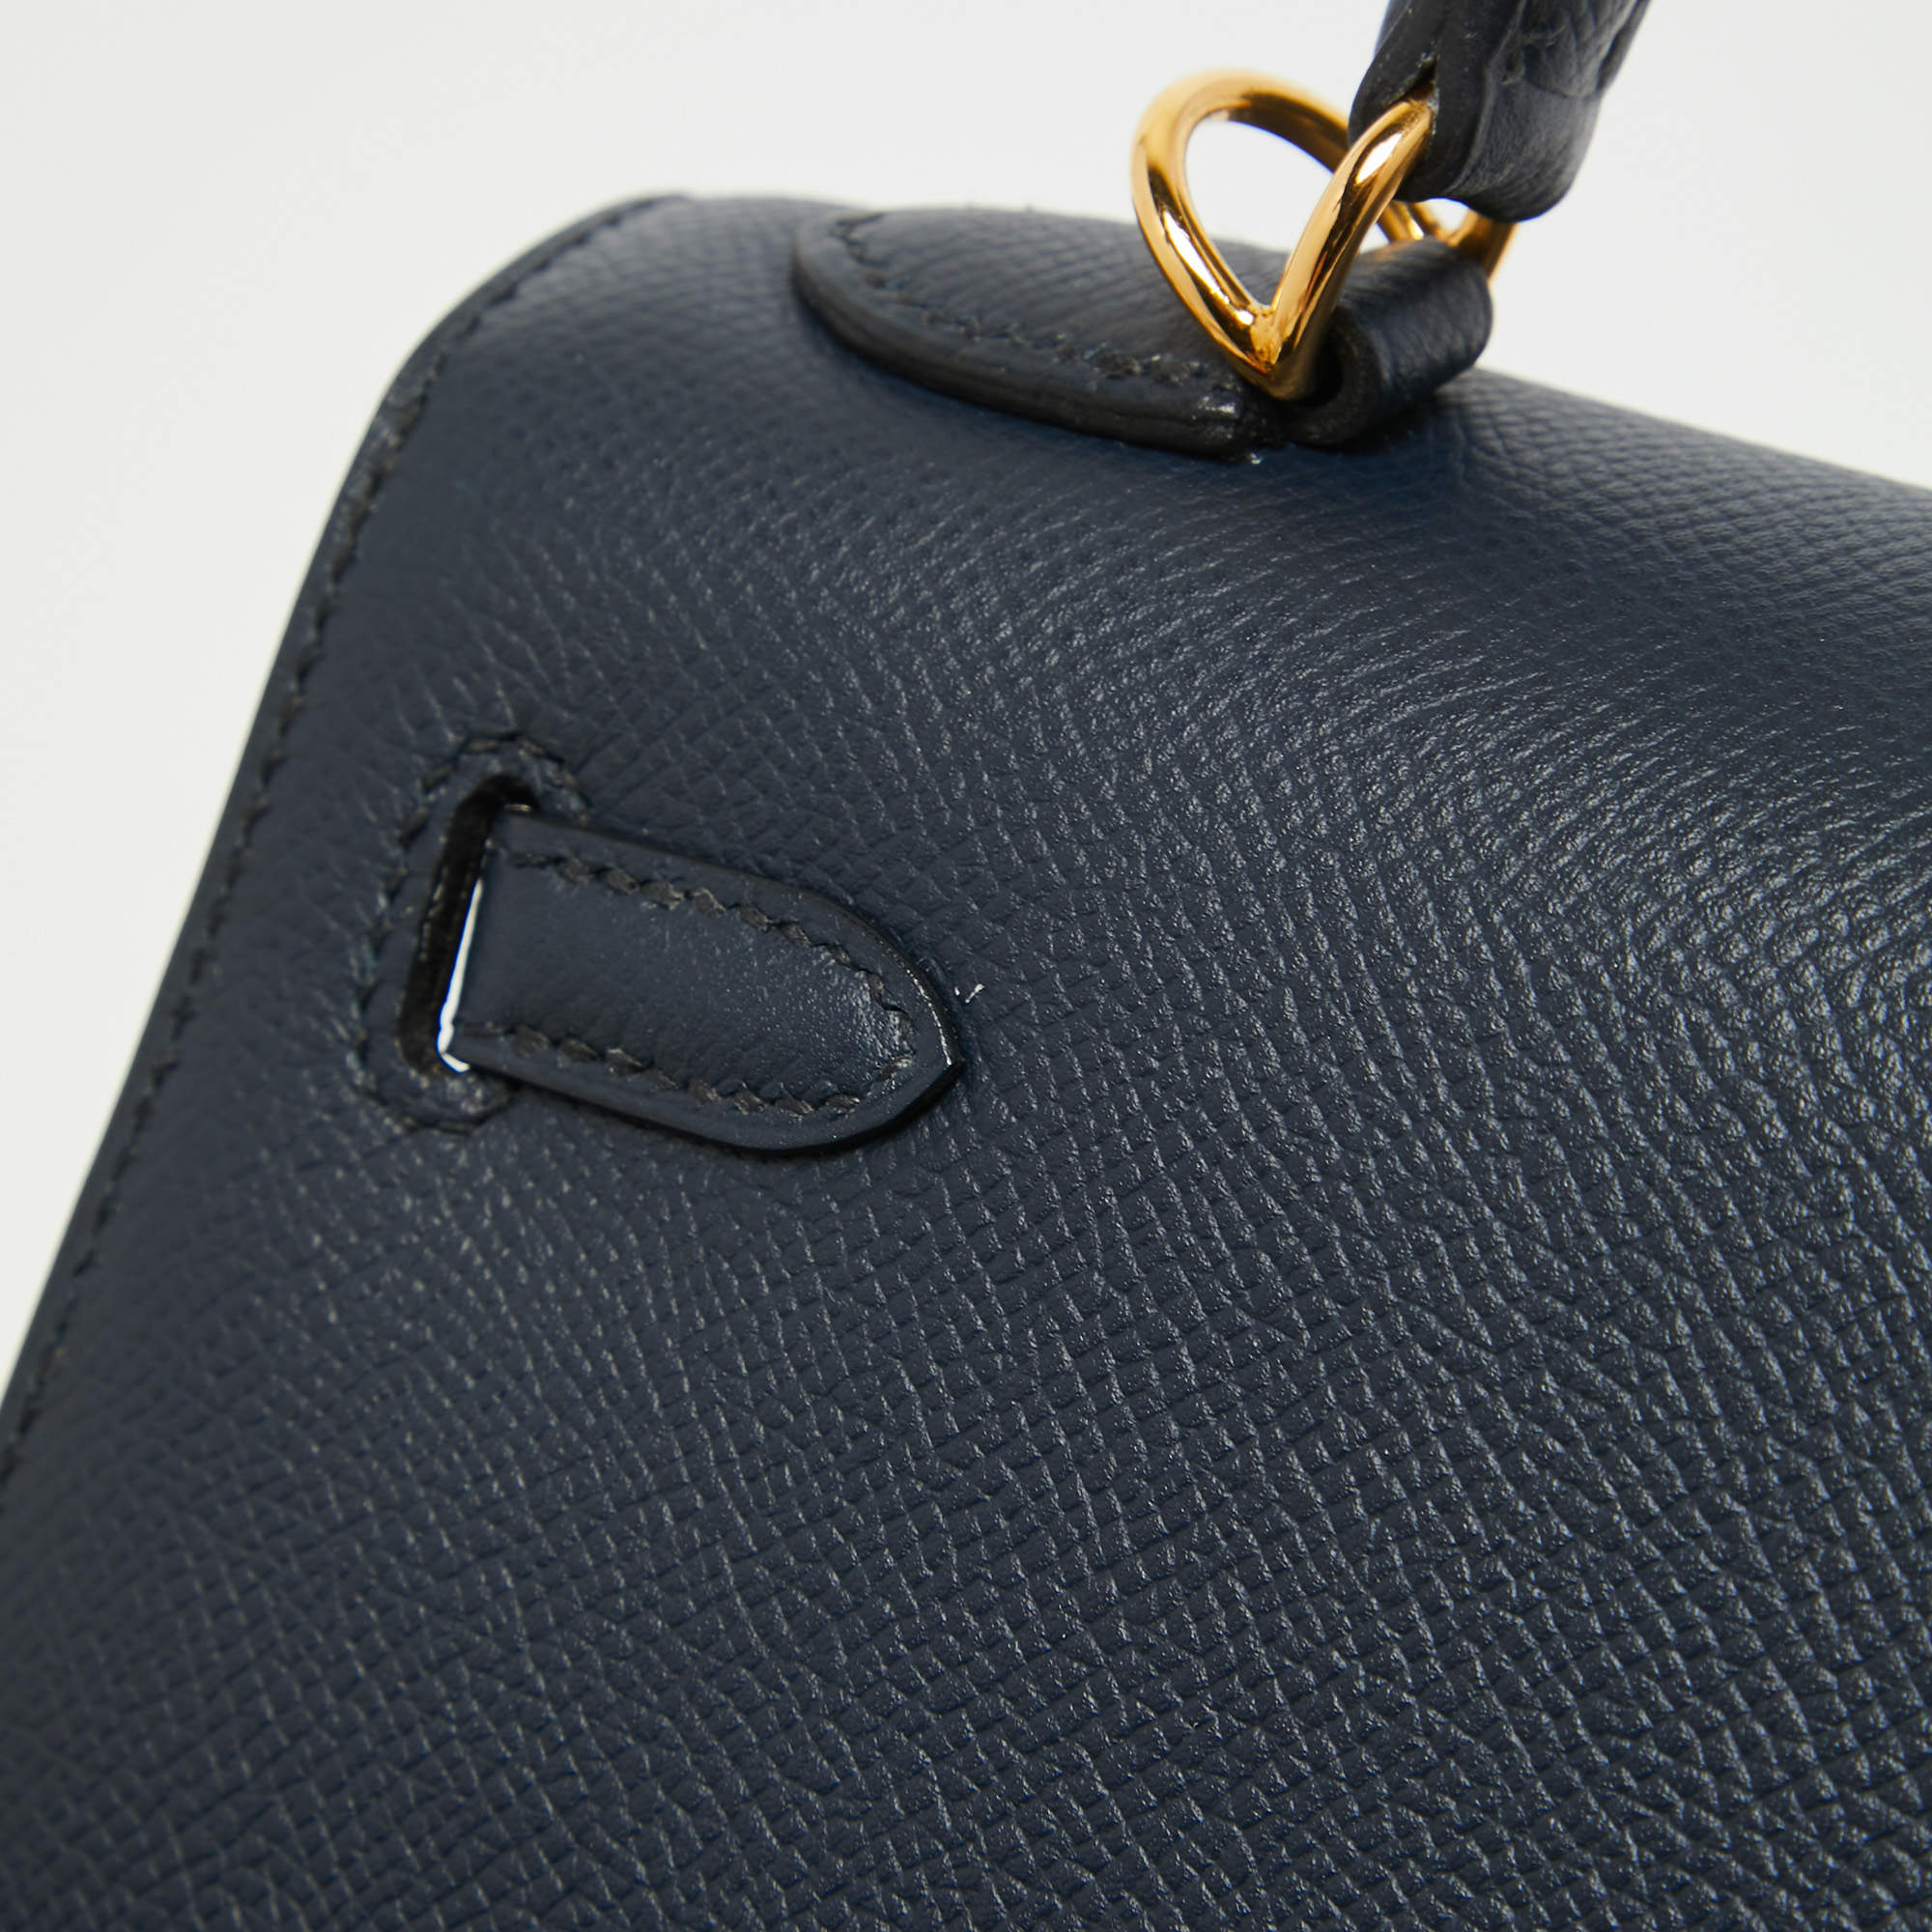 Hermes Blue Nuit Epsom Leather Gold Finish Kelly Sellier 25 Bag